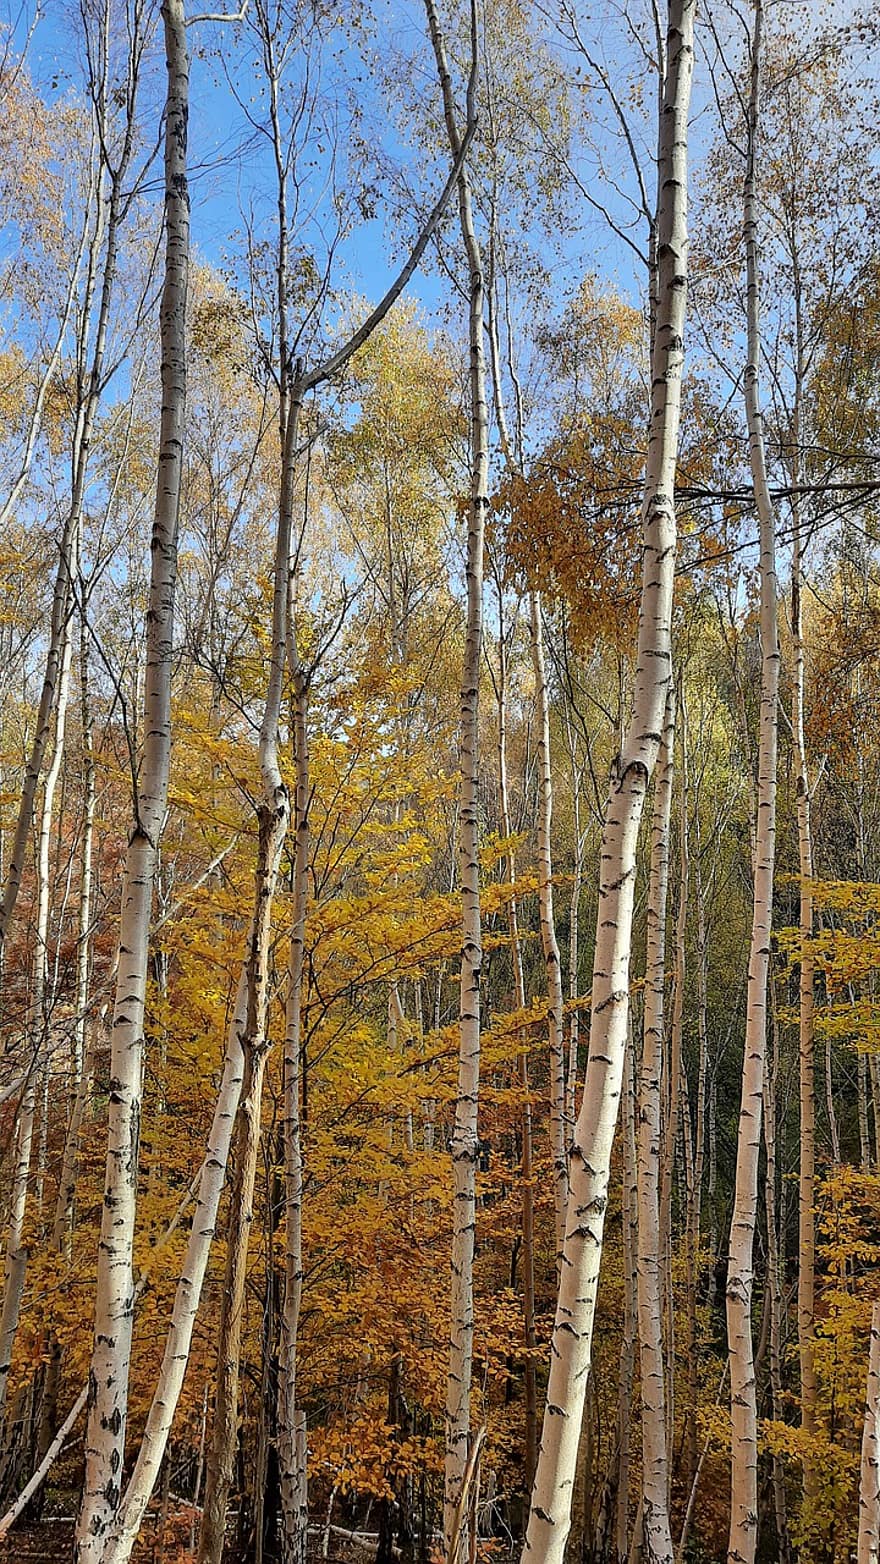 البتولا ، بستان البتولا ، غابة ، الخريف ، الأشجار ، طبيعة ، شجرة بيضاء ، جذوع الأشجار ، شجرة ، الأصفر ، ورقة الشجر